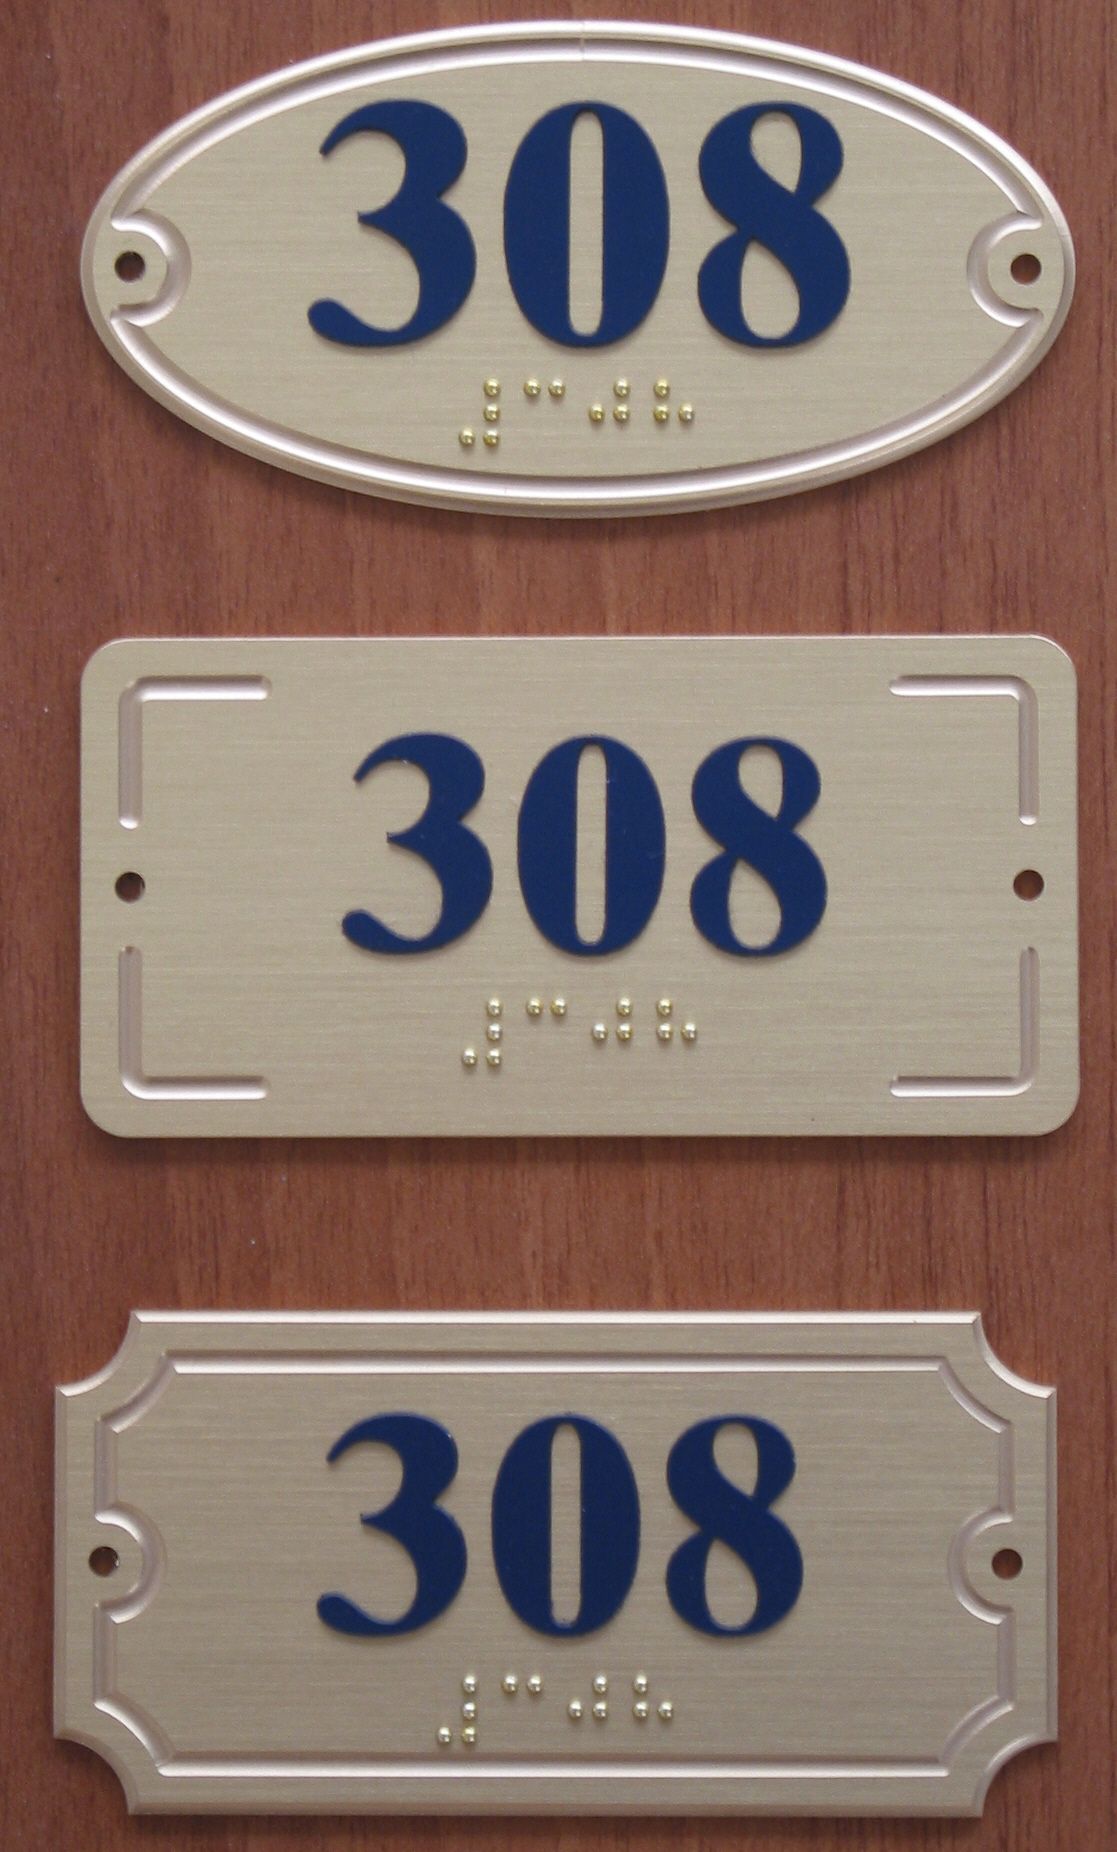 Braille fuori porta con numero 308